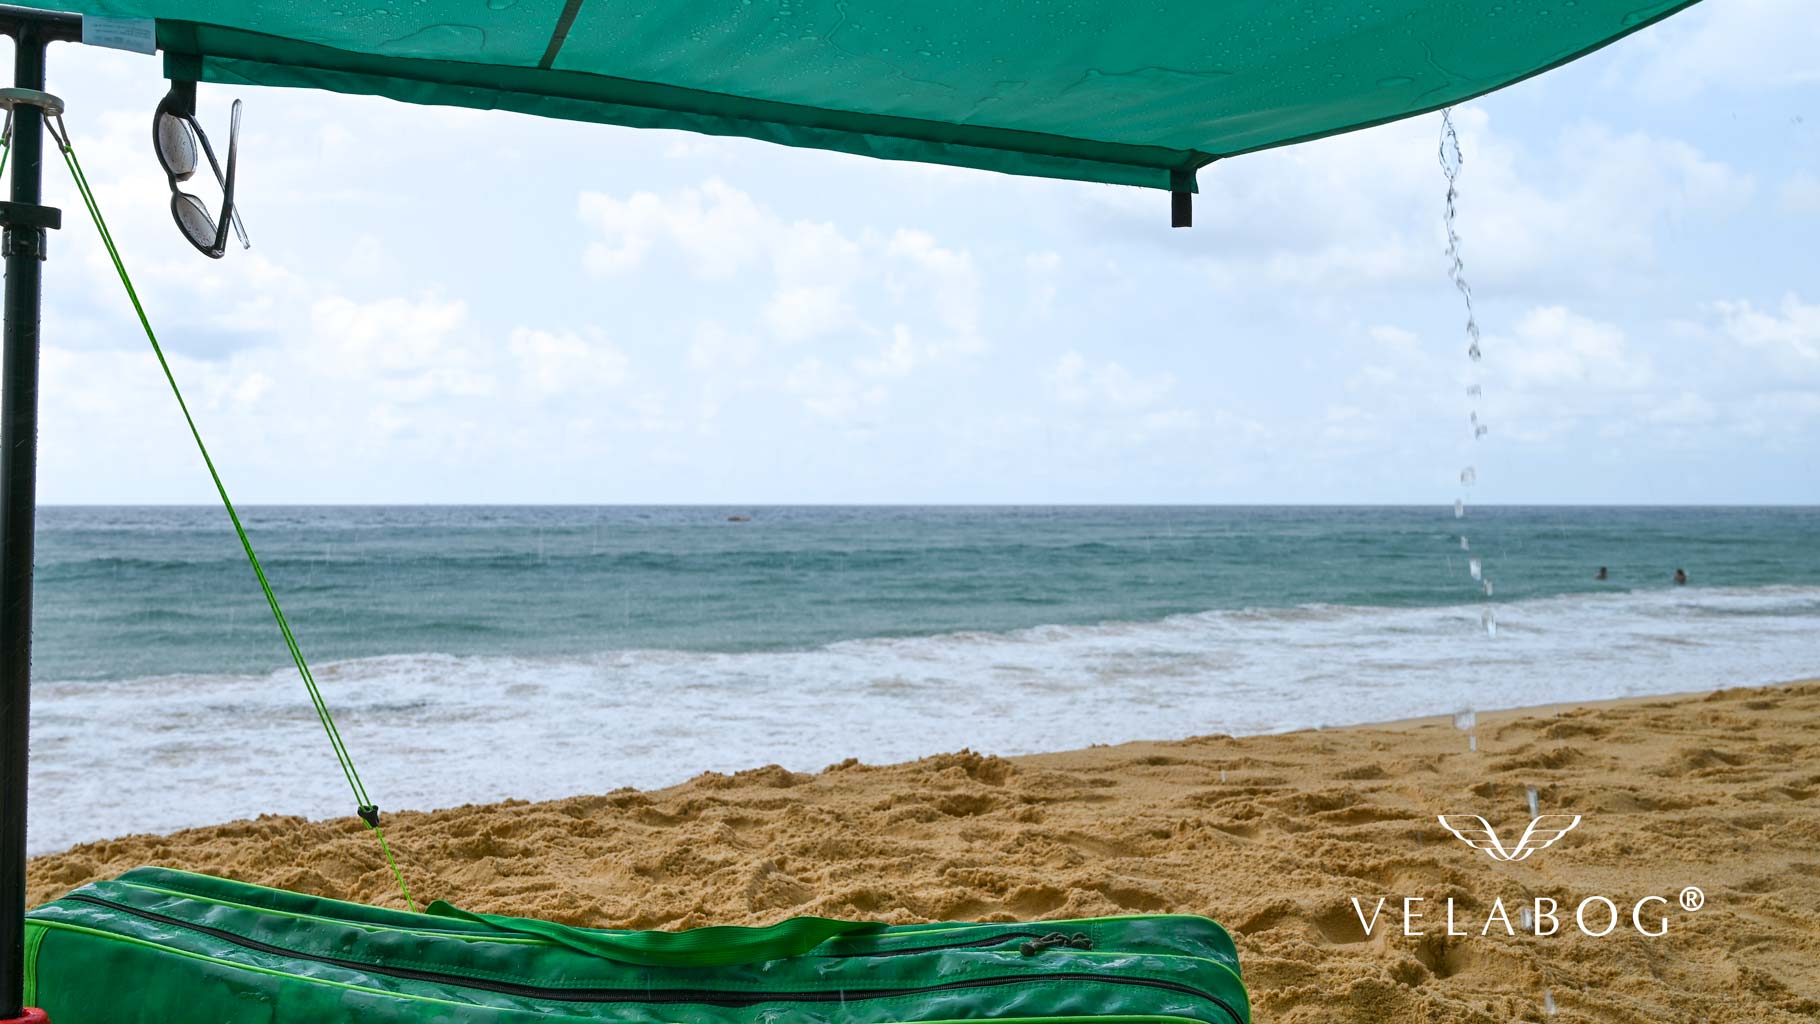 Les voiles d’ombrage tente plage Velabog Breeze pour la plage protègent même en cas d’averse de courte durée. Voile d’ombrage, parasol et tente de plage en un seul produit. Vous avez tout pour profiter vraiment pleinement de la plage.